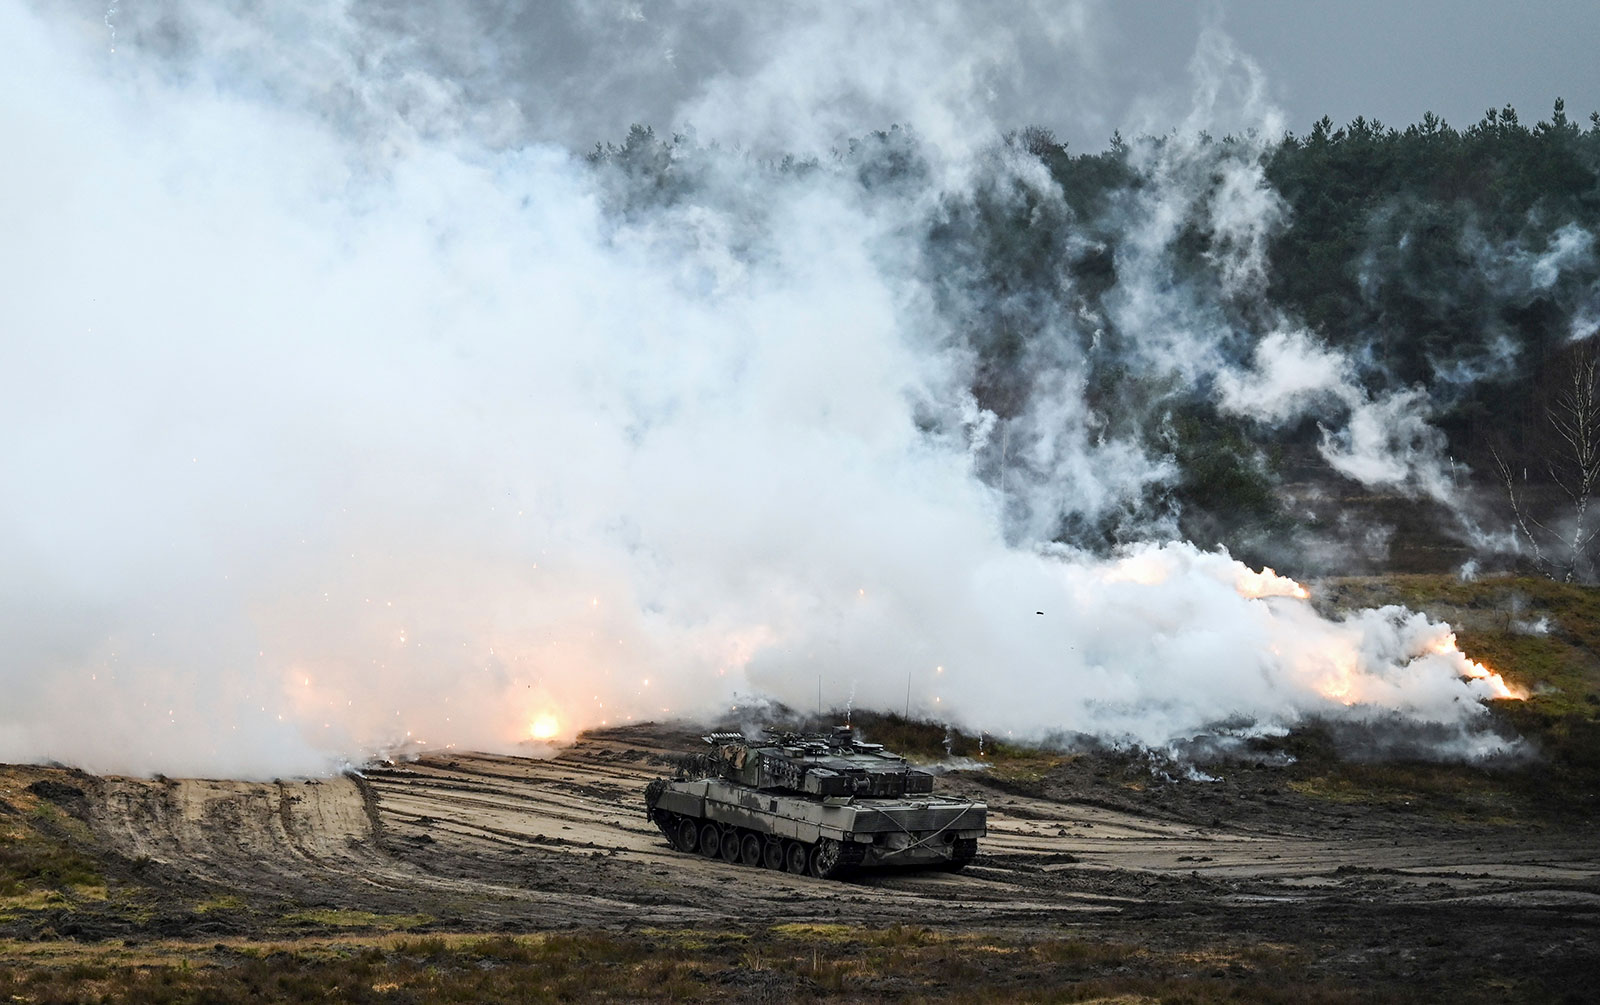 Un Leopard 2 A6 del Batallón de tanques 203 del Ejército Alemán dispara una cortina de humo en el área de entrenamiento militar. (Foto de: Ann-Marie Utz/picture-alliance/dpa/AP Images)